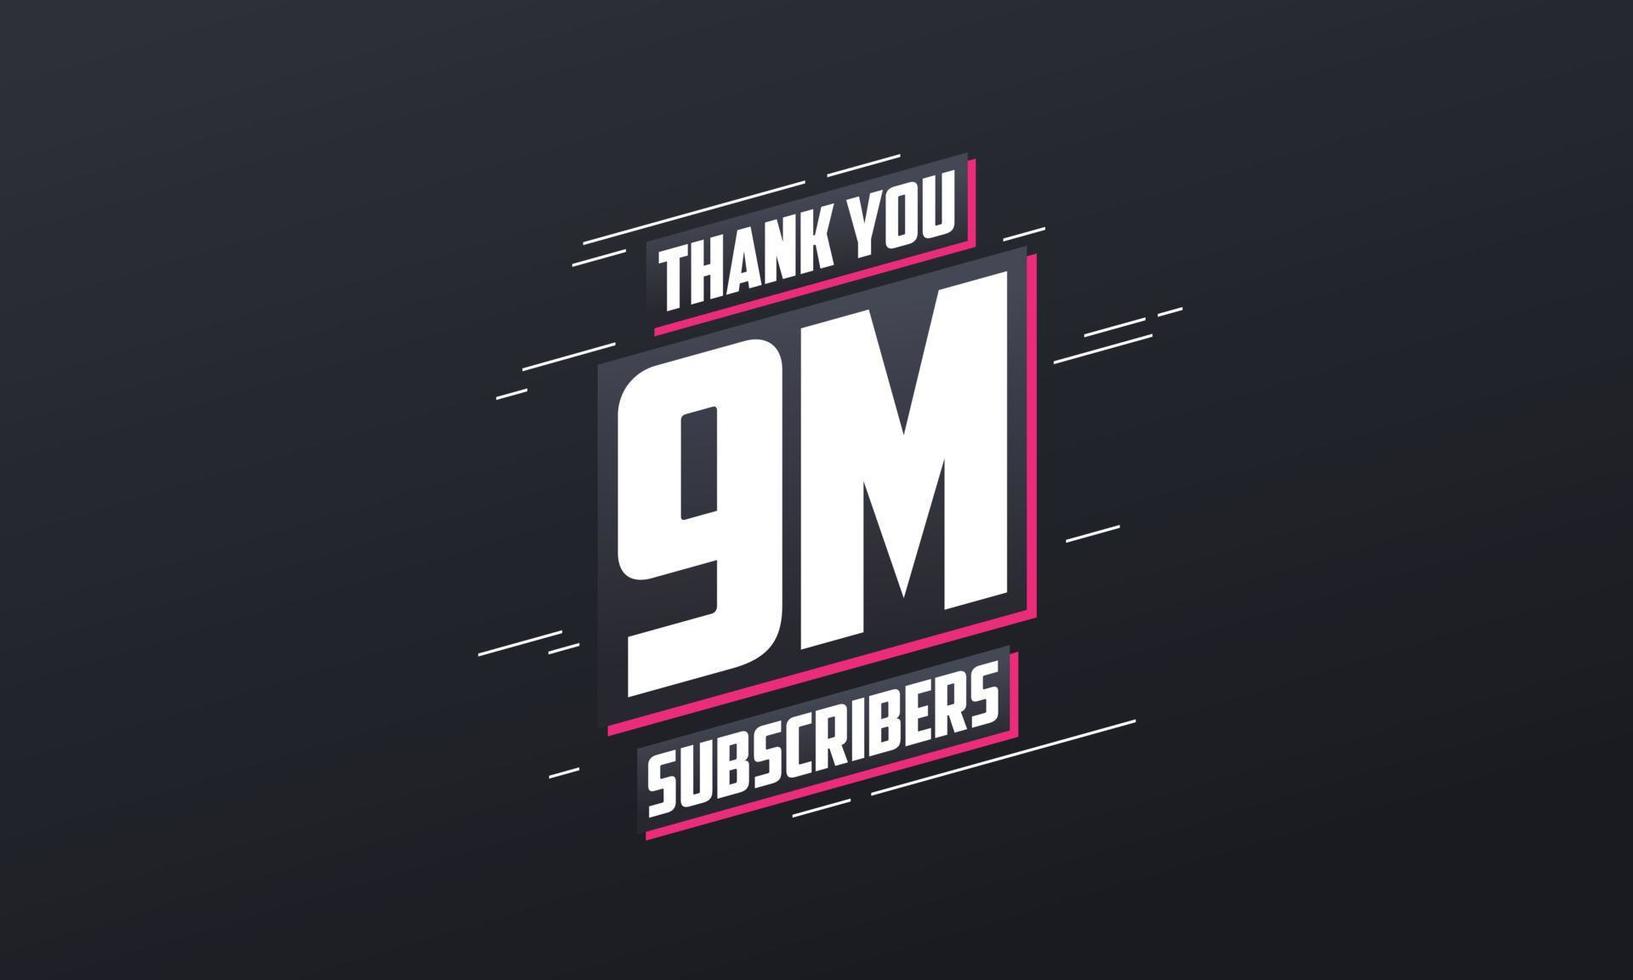 bedankt 9000000 abonnees 9m abonnees viering. vector